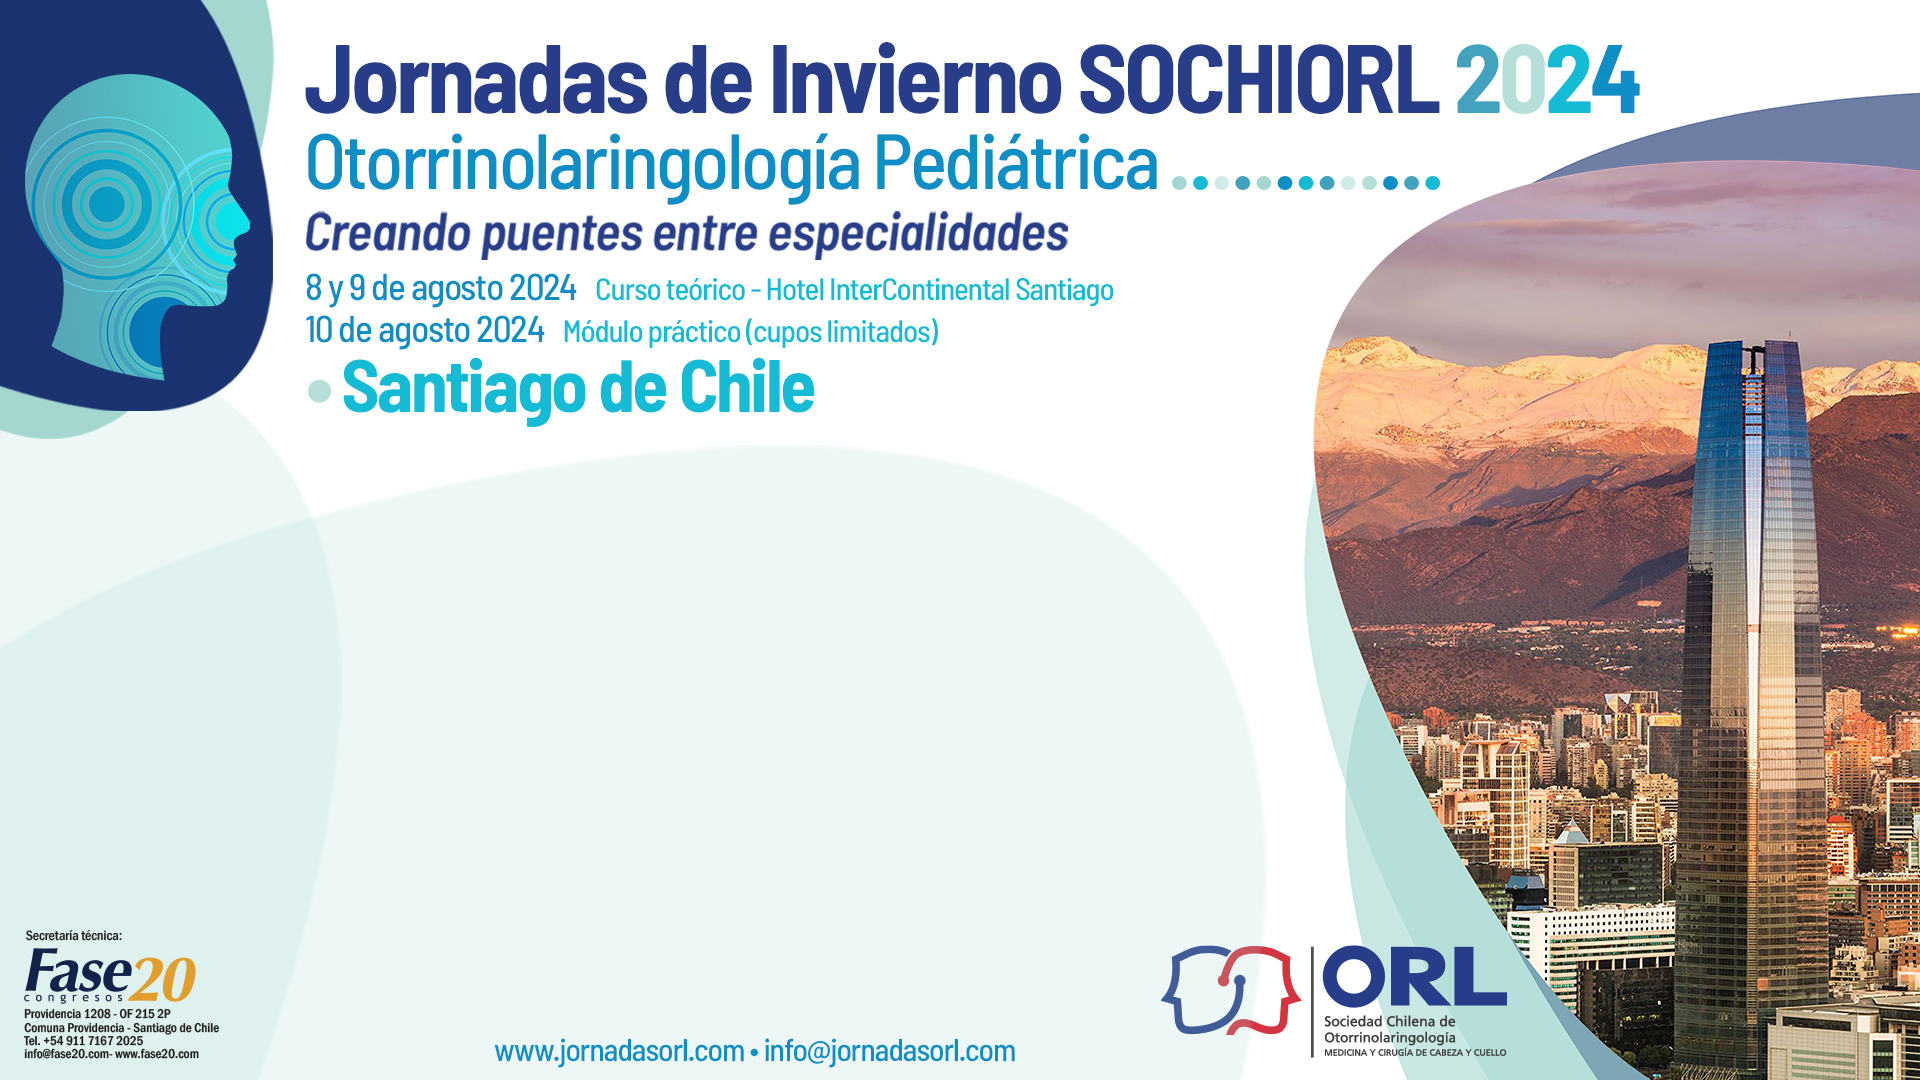 JORNADAS DE INVIERNO 2024 DE LA SOCIEDAD CHILENA DE OTORRINOLARINGOLOGÍA (SOCHIORL) - Plantilla